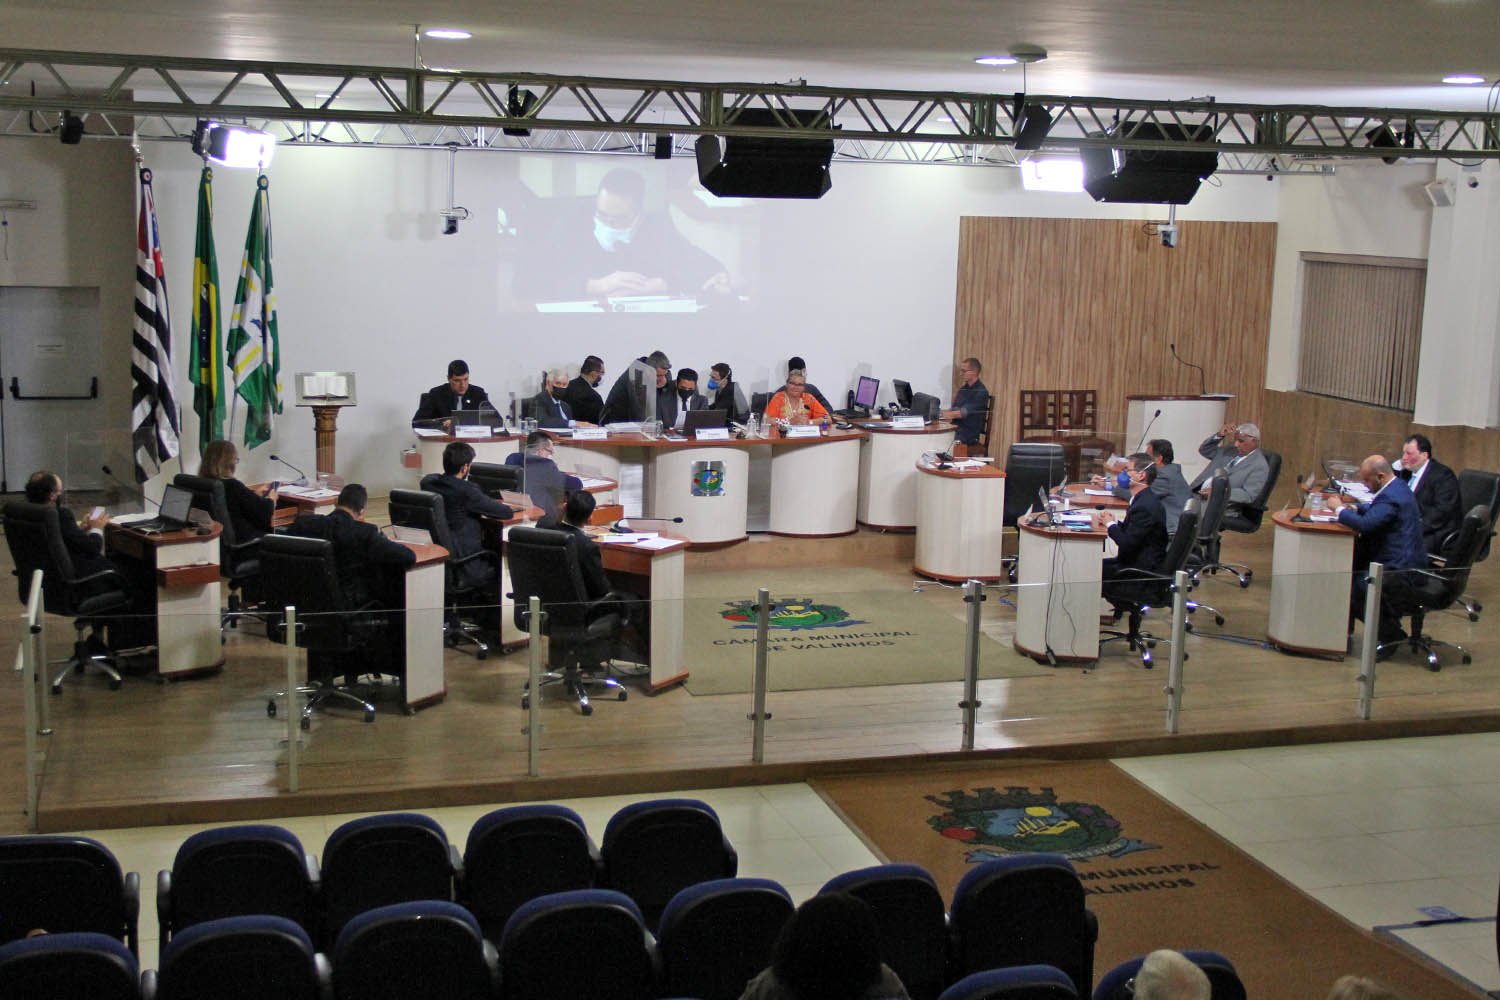 #PraCegoVer: foto mostra o plenário da Câmara visto de cima com os vereadores sentados em seus lugares.